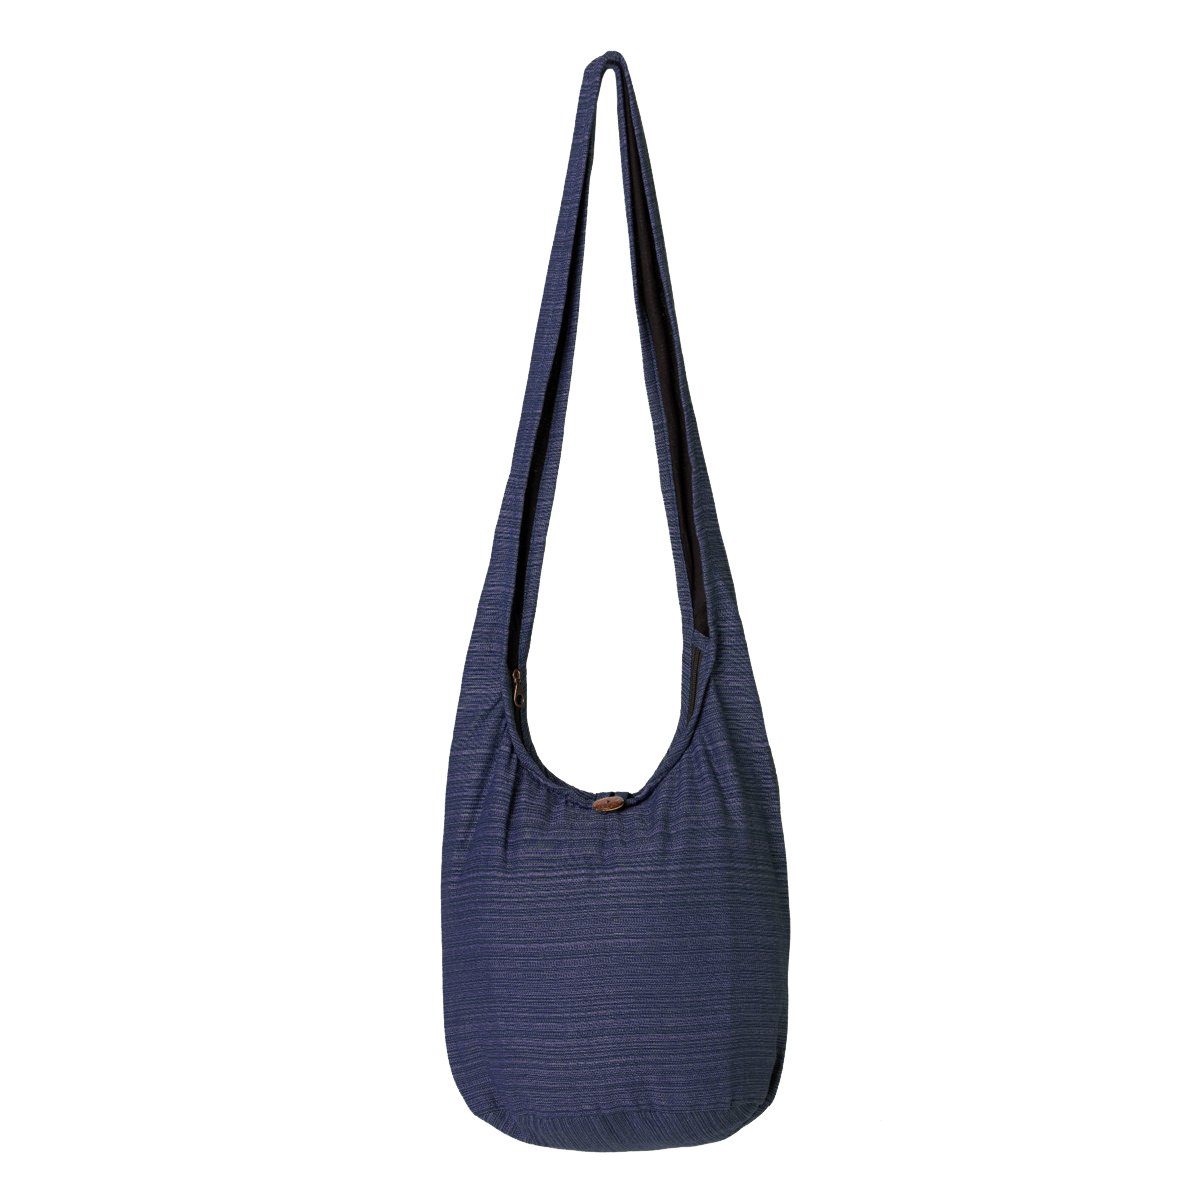 PANASIAM Wickeltasche Schulterbeutel Lini Beuteltasche aus 100% Baumwolle Schultertasche, In 2 Größen auch als Strandtasche Yogatasche oder Handtasche nutzbar dunkel blau